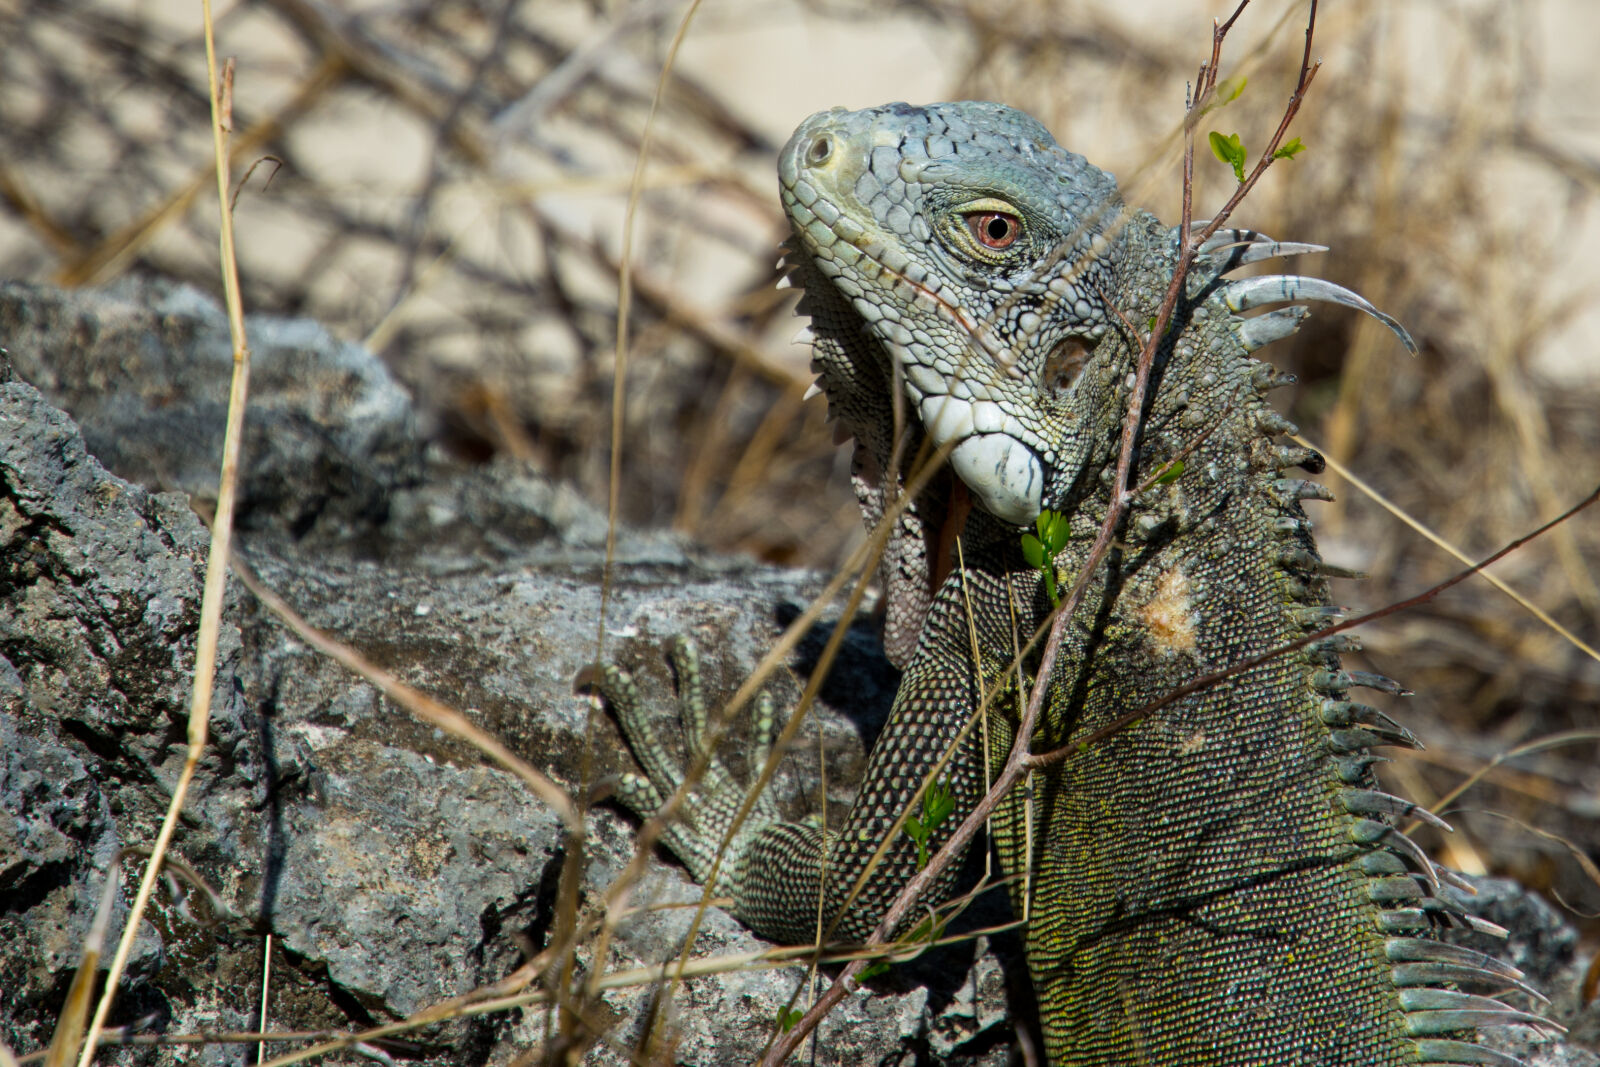 Nikon AF-S DX Nikkor 16-85mm F3.5-5.6G ED VR sample photo. Animal, lizard, iguana photography